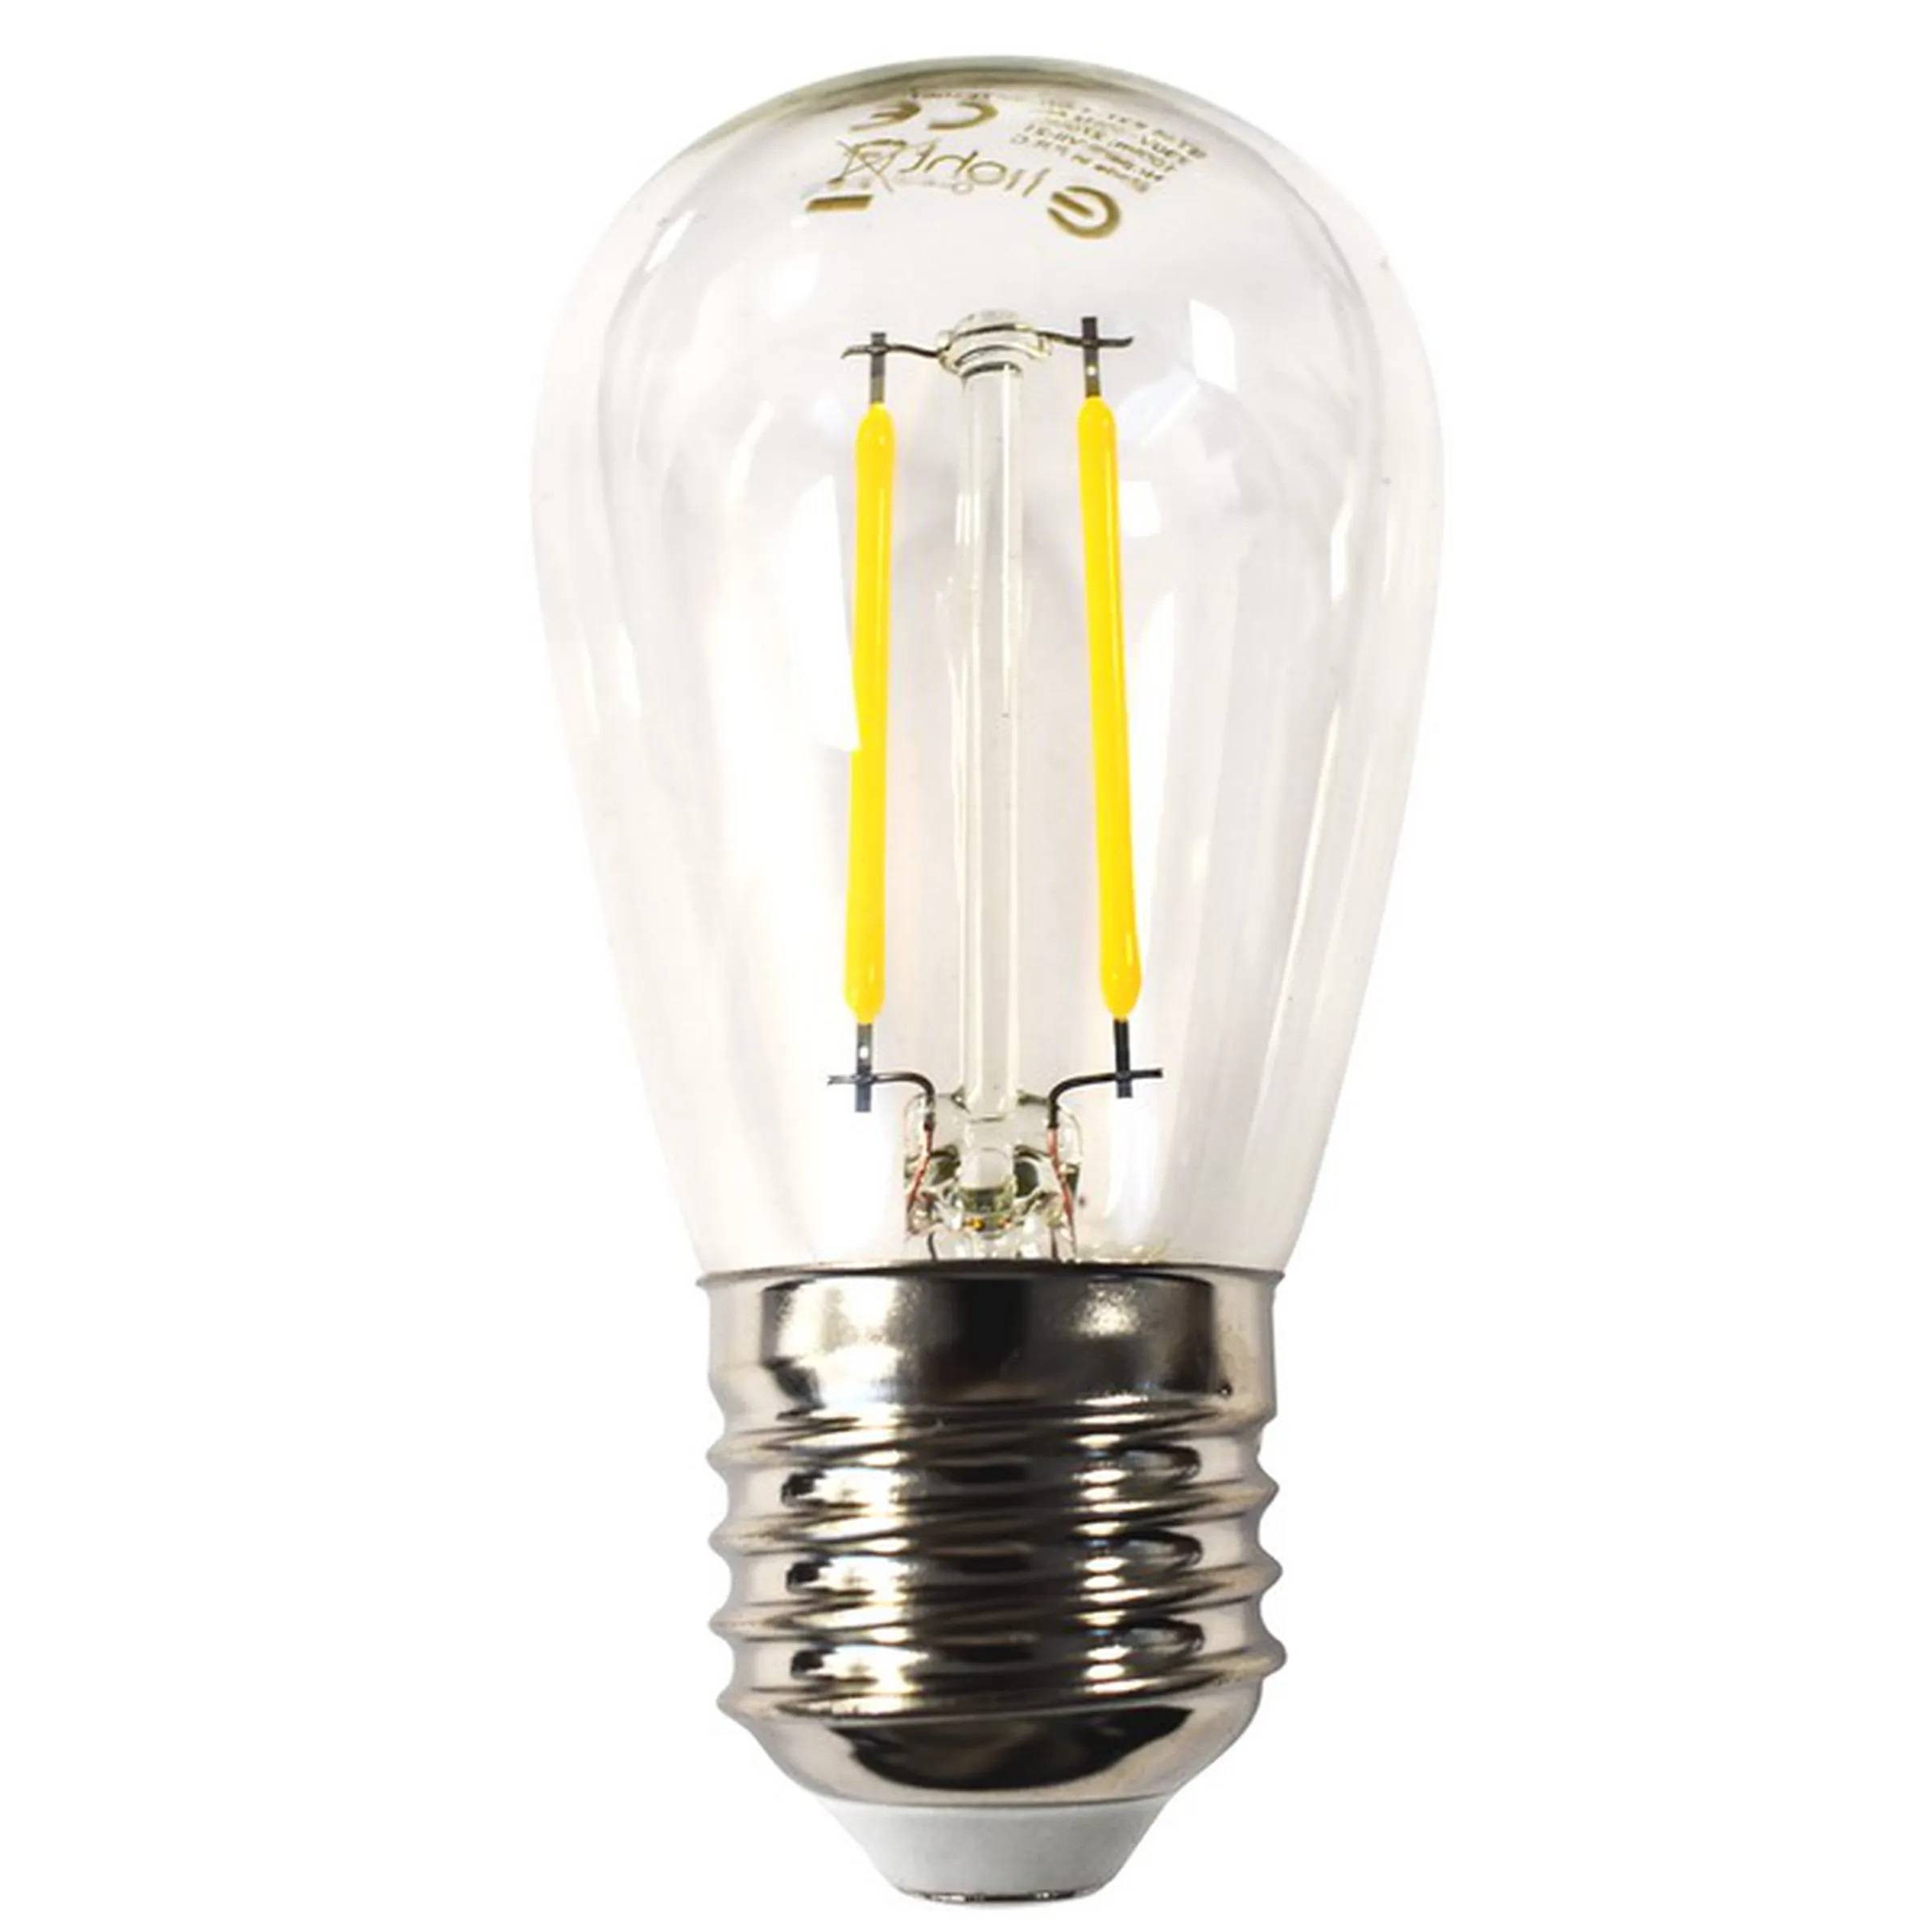 Ampoule Guinguette filament 1,5W E27 LED blanc chaud 2700k ST45 verre